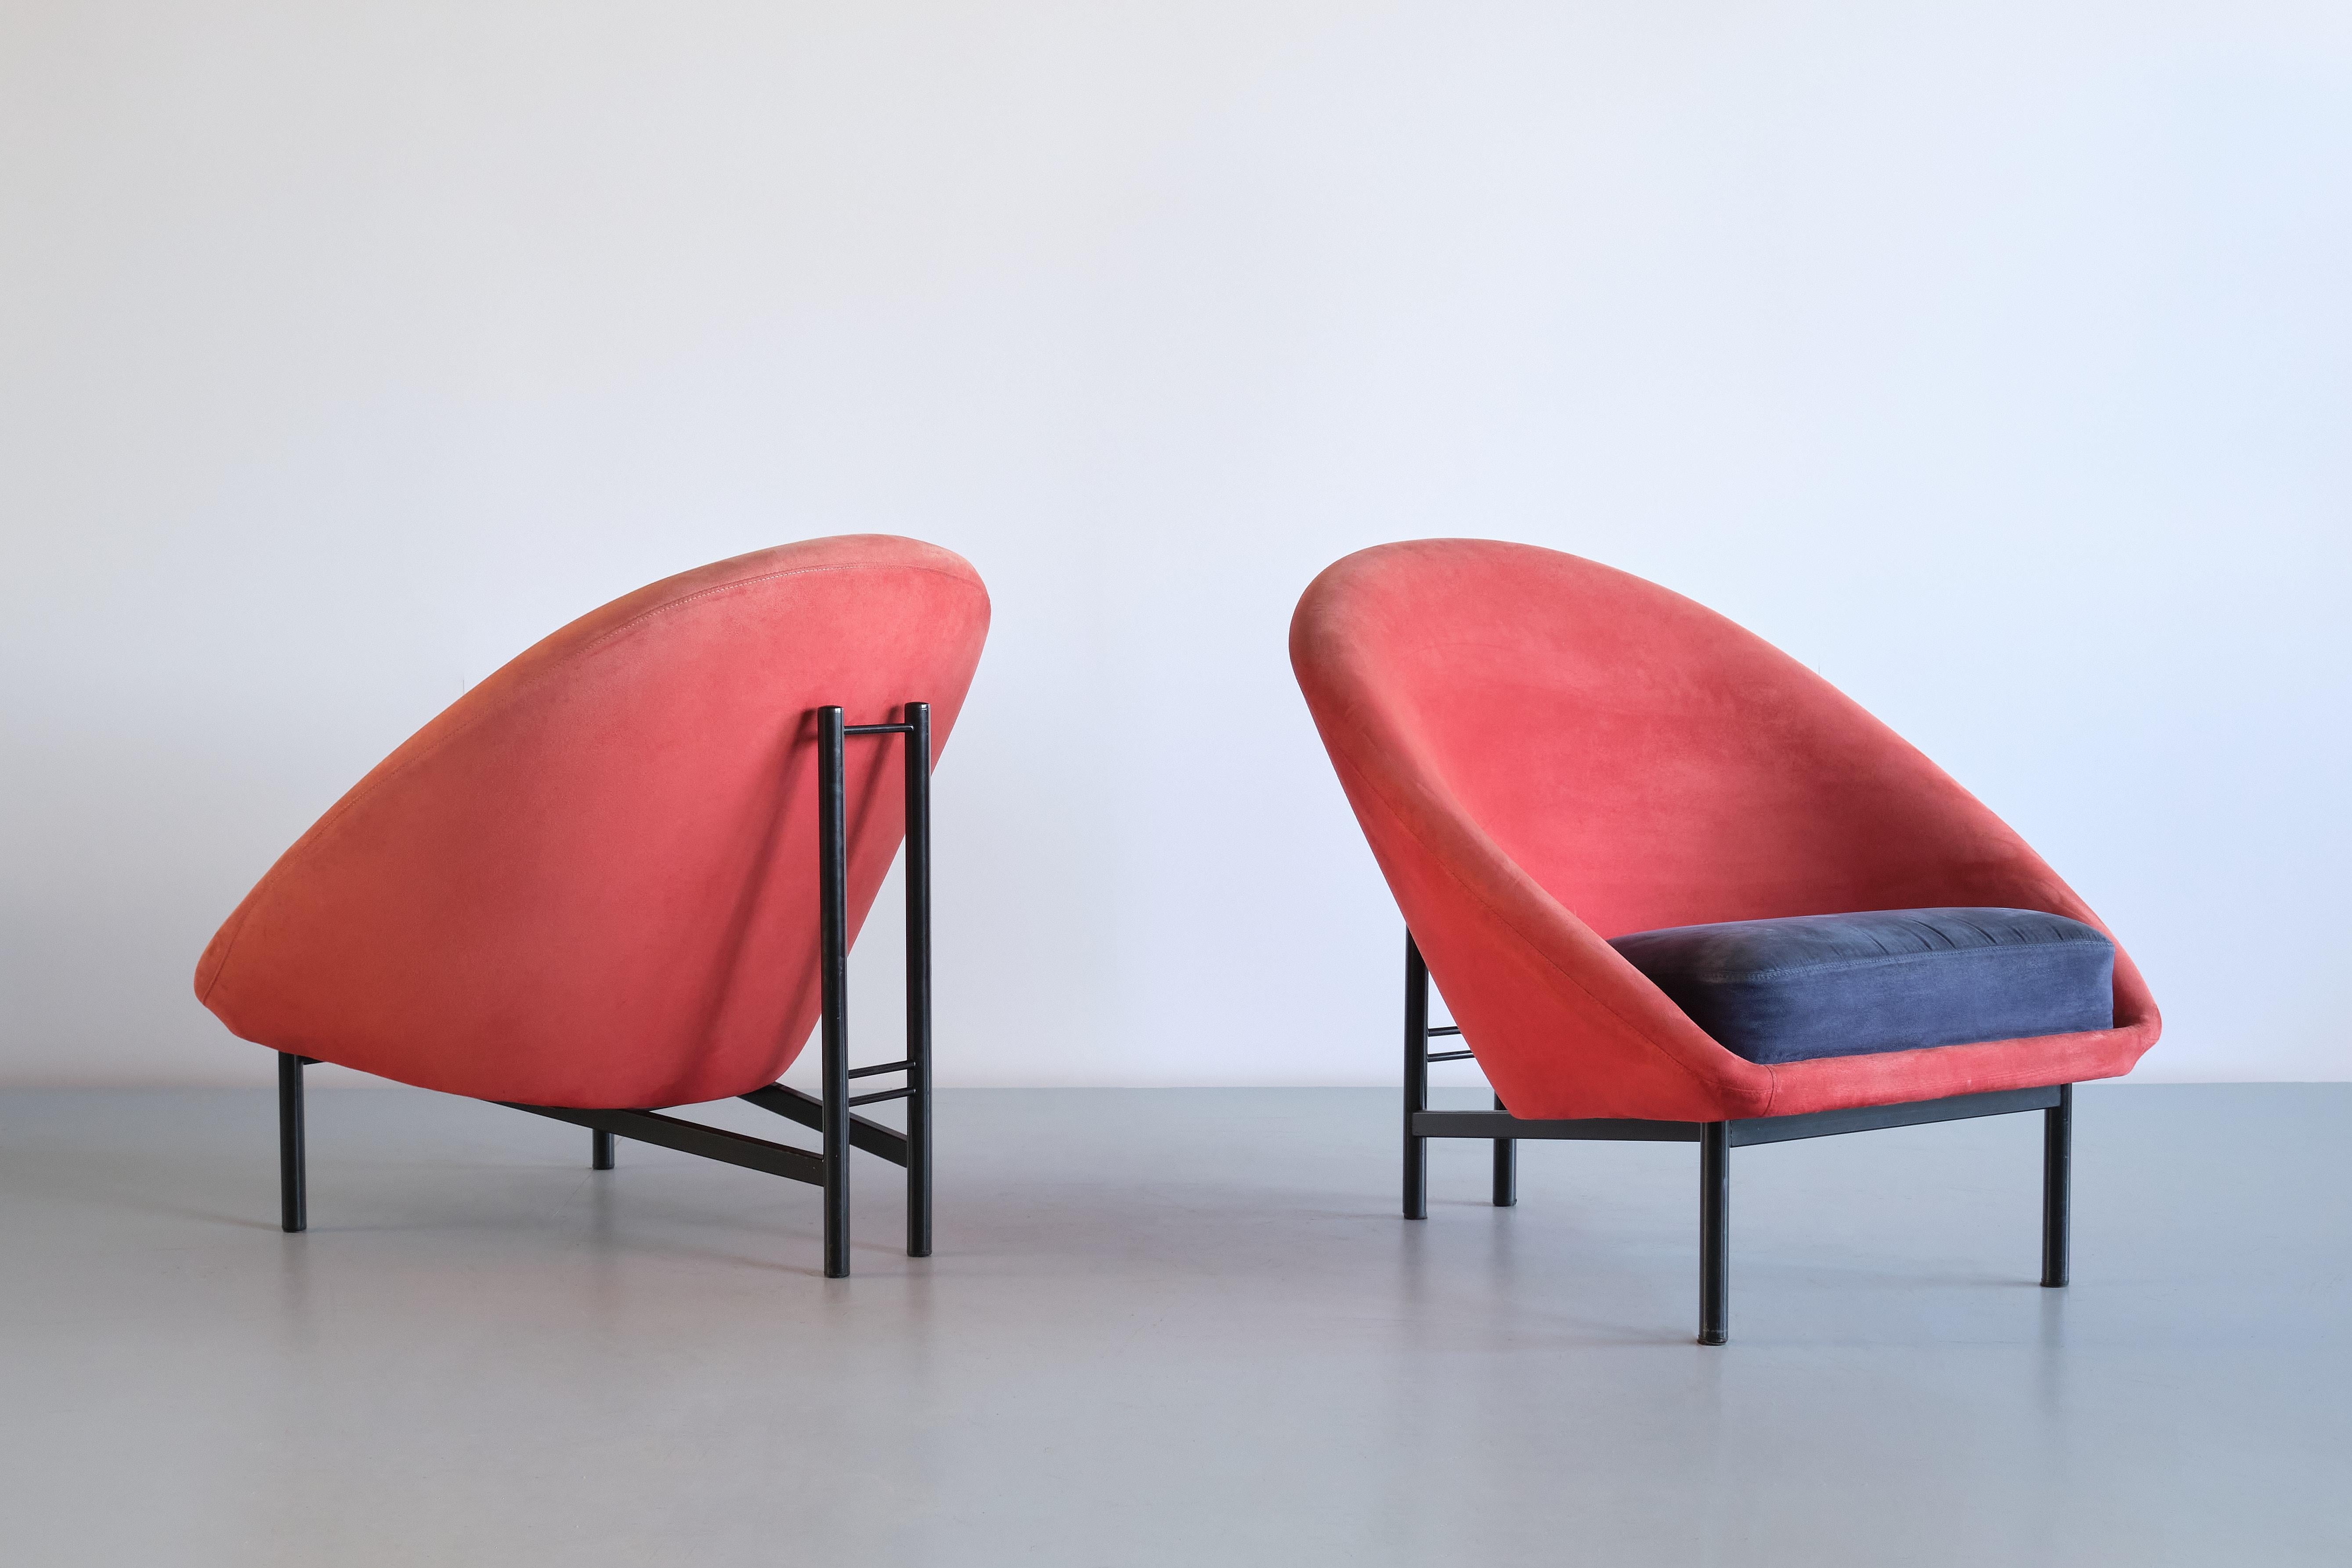 Dieses auffällige Paar Loungesessel wurde von Theo Ruth in den frühen 1960er Jahren entworfen. Das seltene Modell mit der Nummer F815 wurde von Artifort in den Niederlanden hergestellt.
Das Design ist geprägt von den abgerundeten Linien des